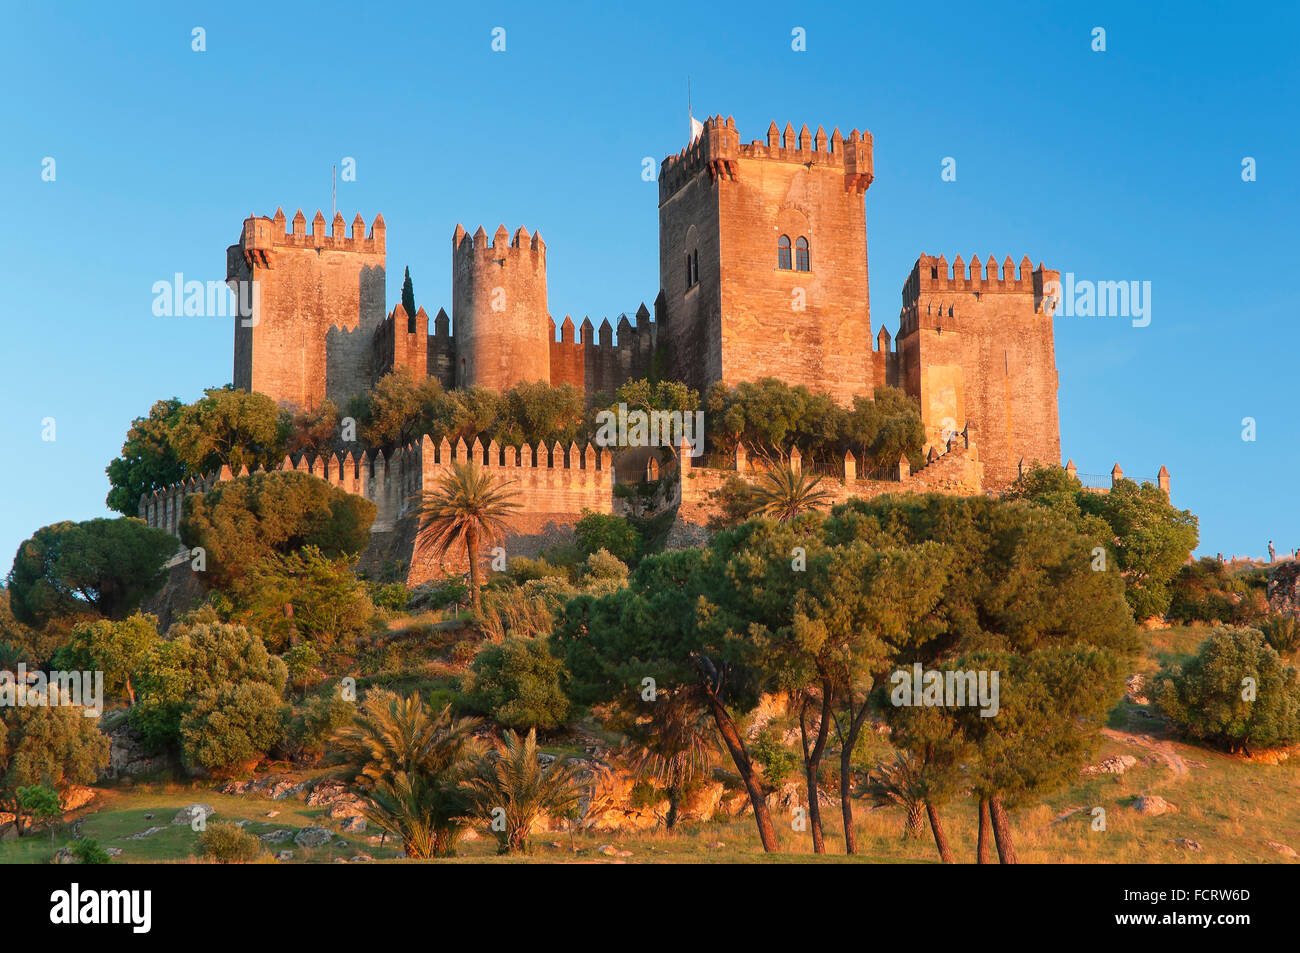 Castle, Almodovar del Rio, Cordoba province, Region of Andalusia, Spain, Europe Stock Photo